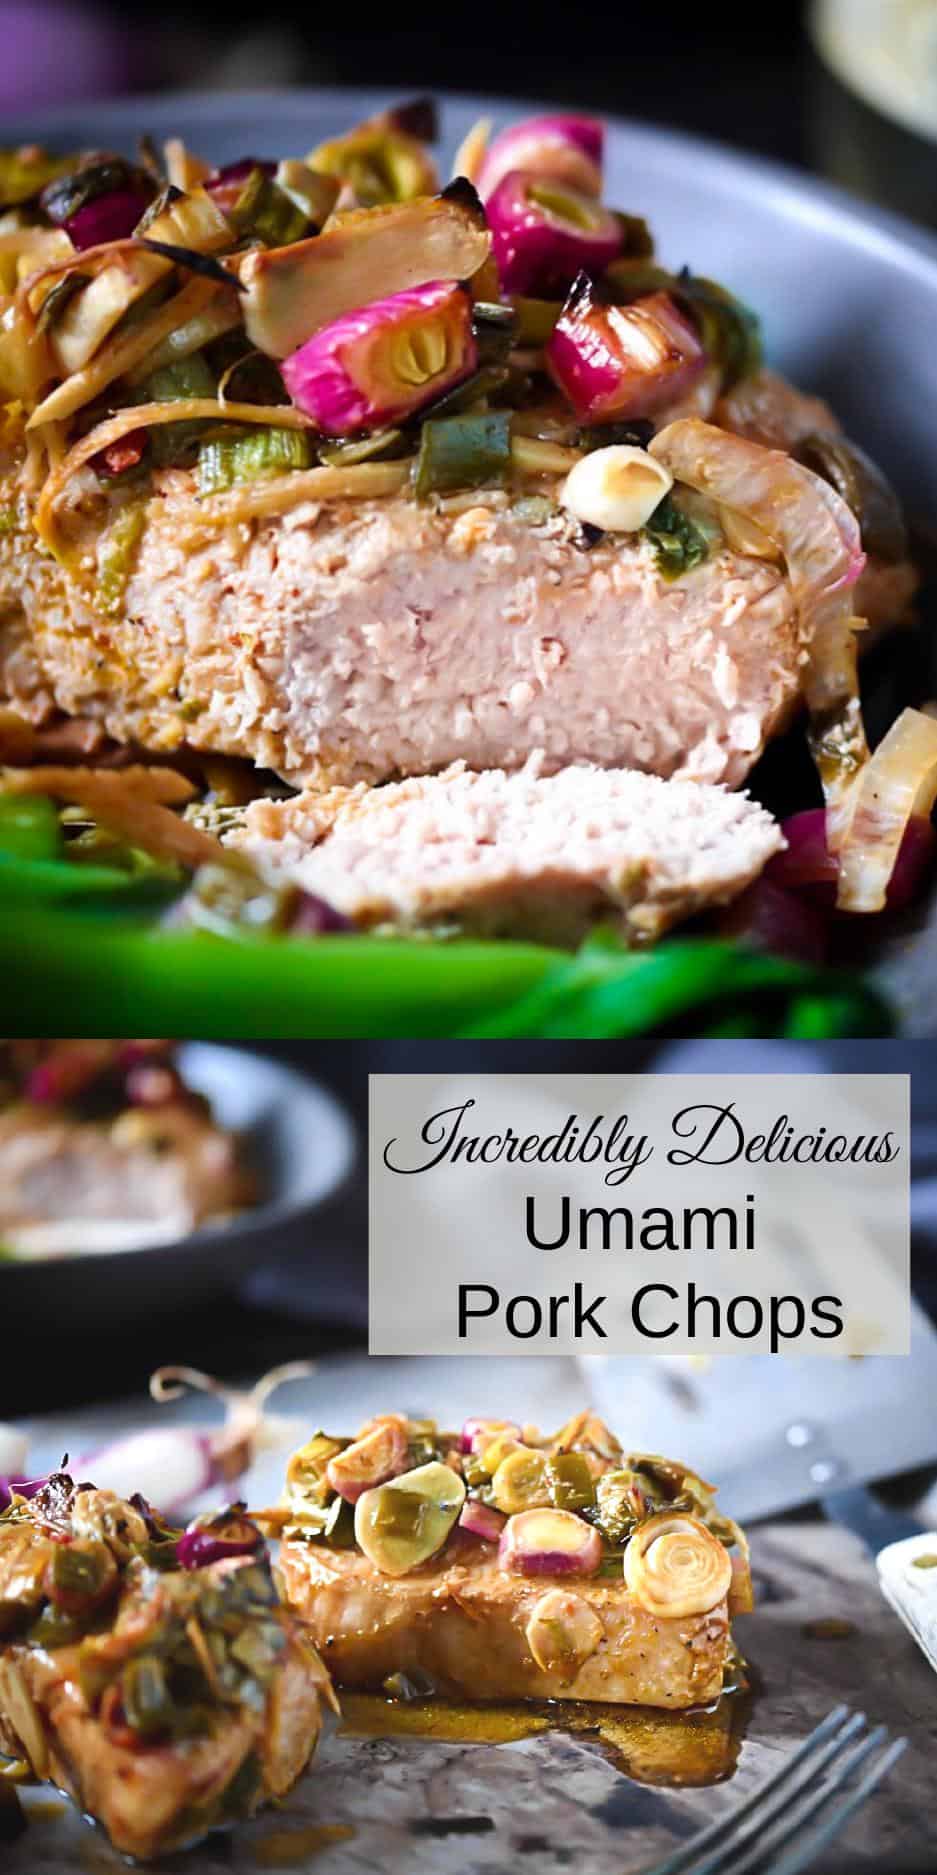 Pin for Umami Pork Chops